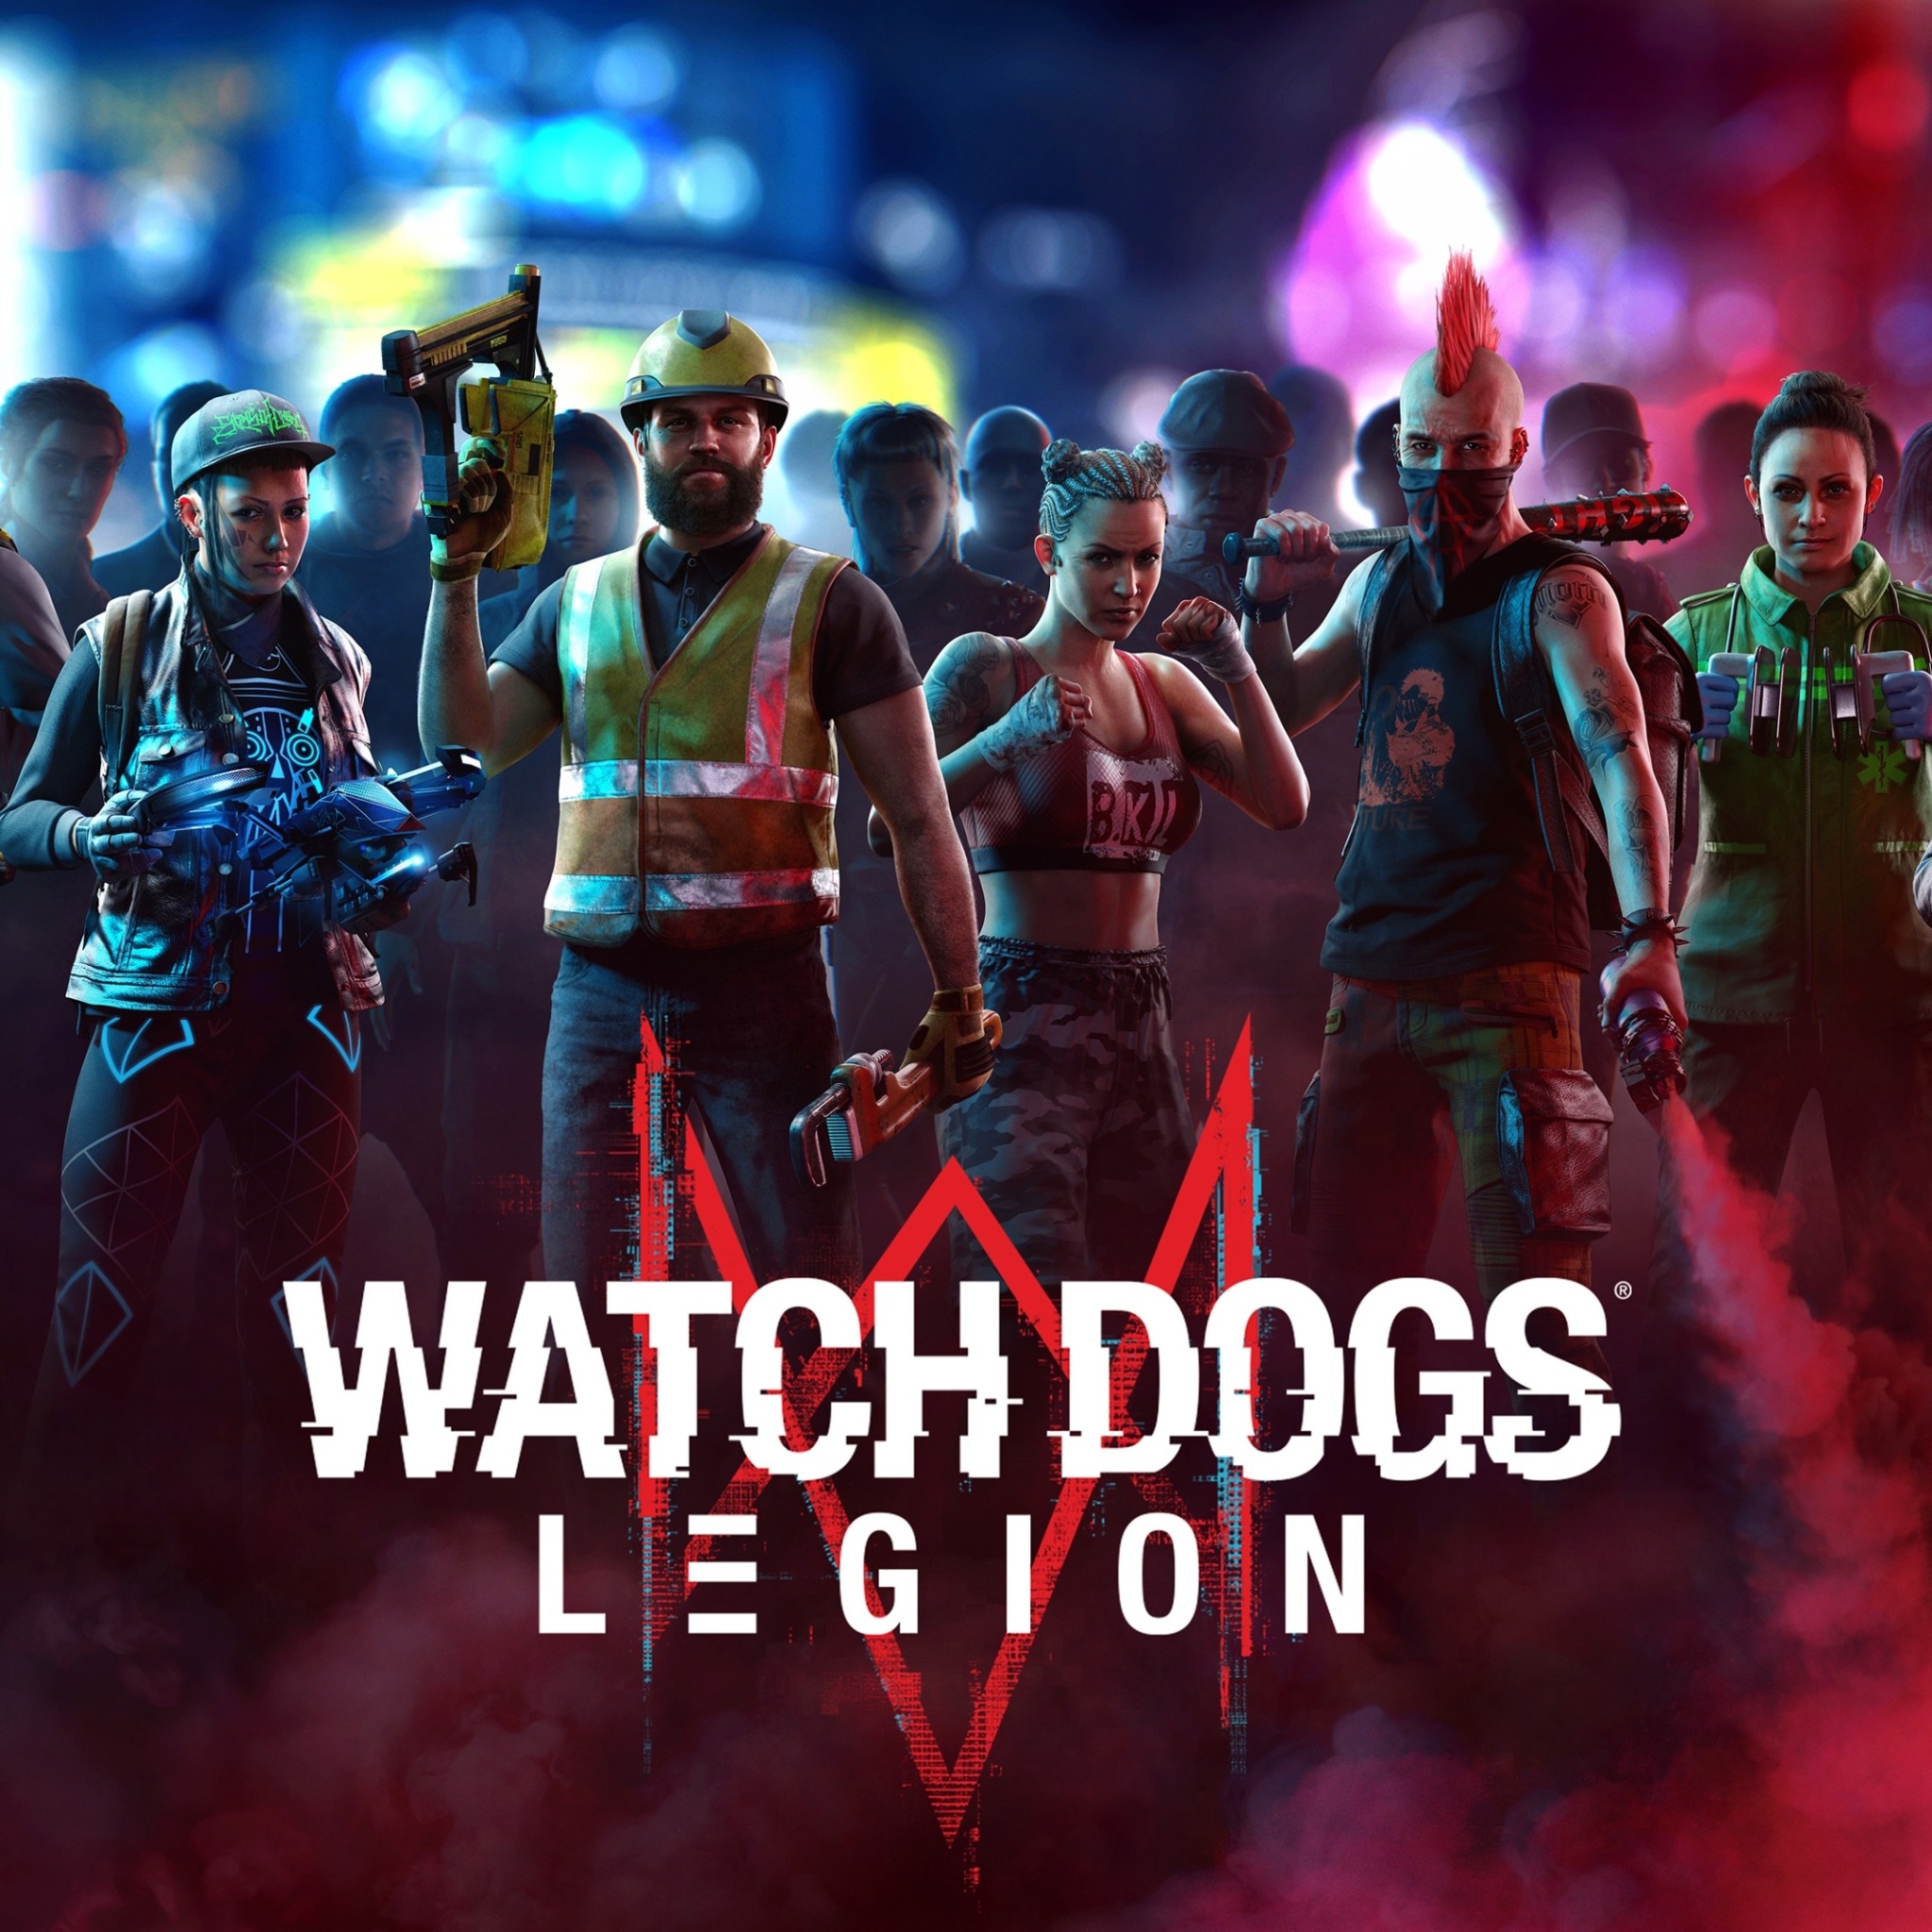 Watch Dogs Legion Wallpaper 4K